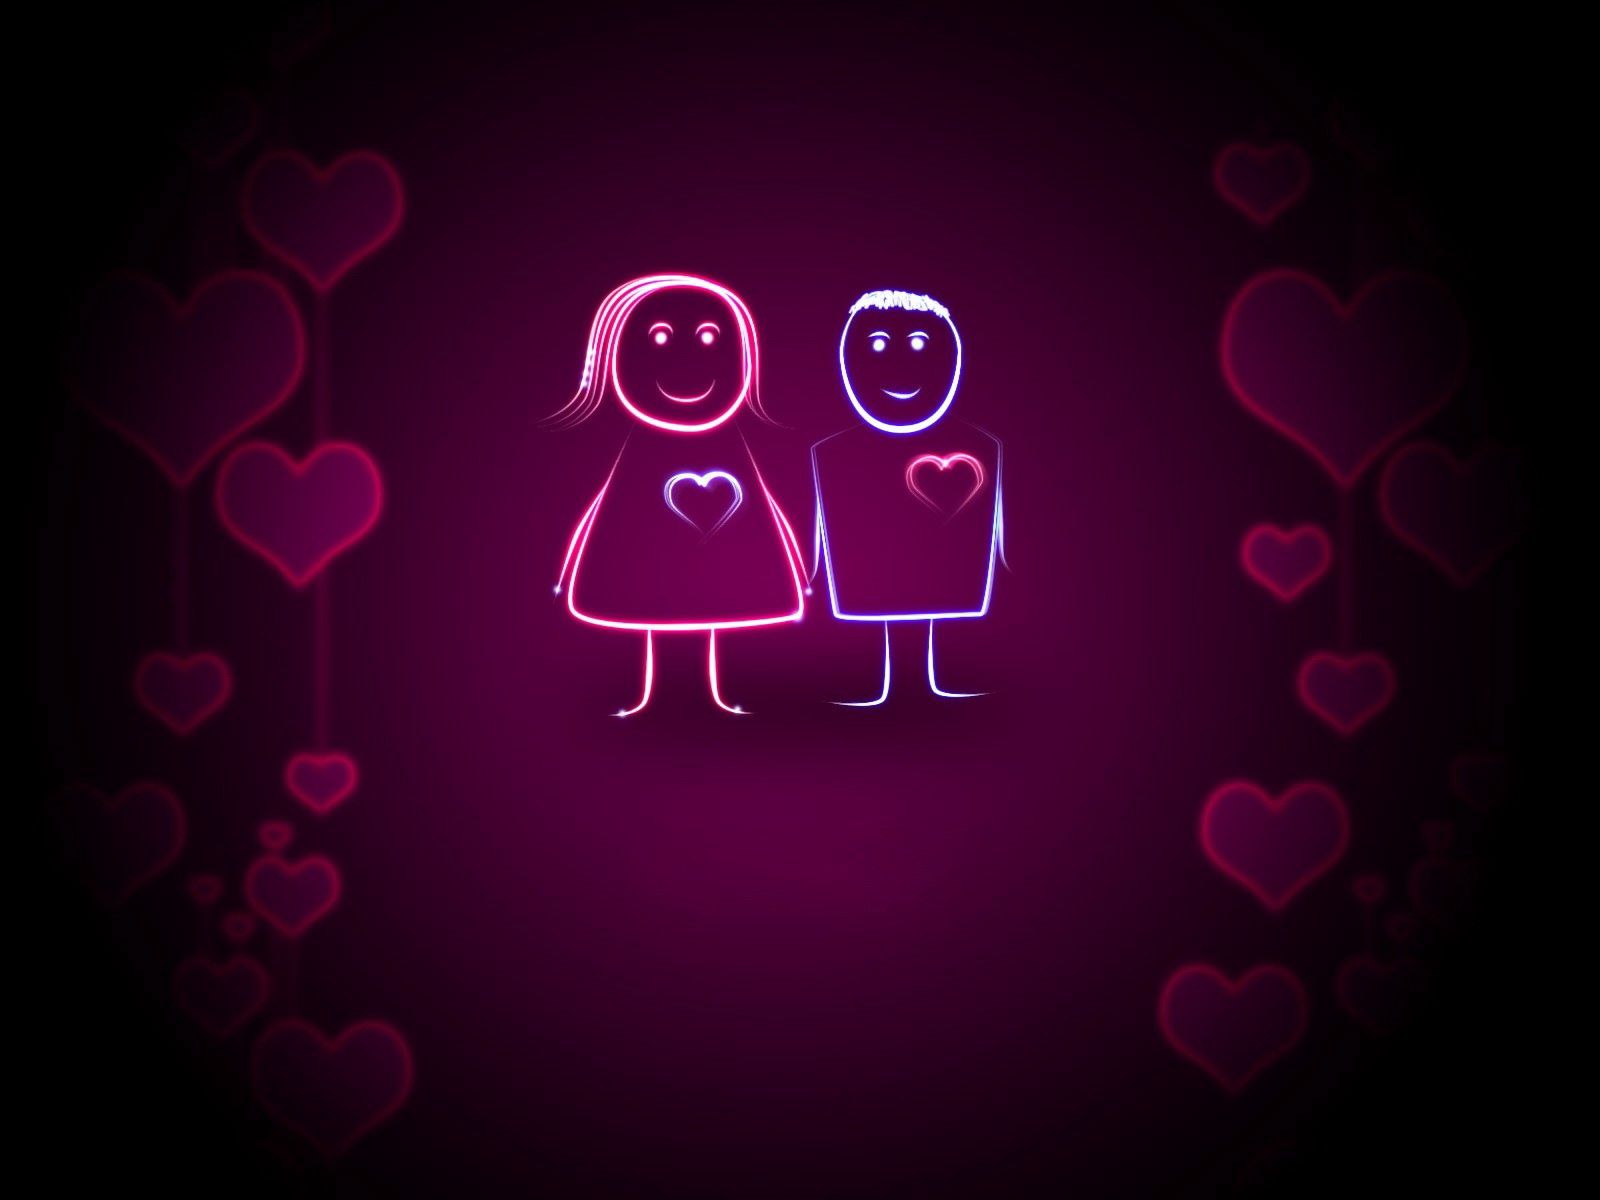 heart, couple, shine, love, pair, background, light wallpaper for mobile